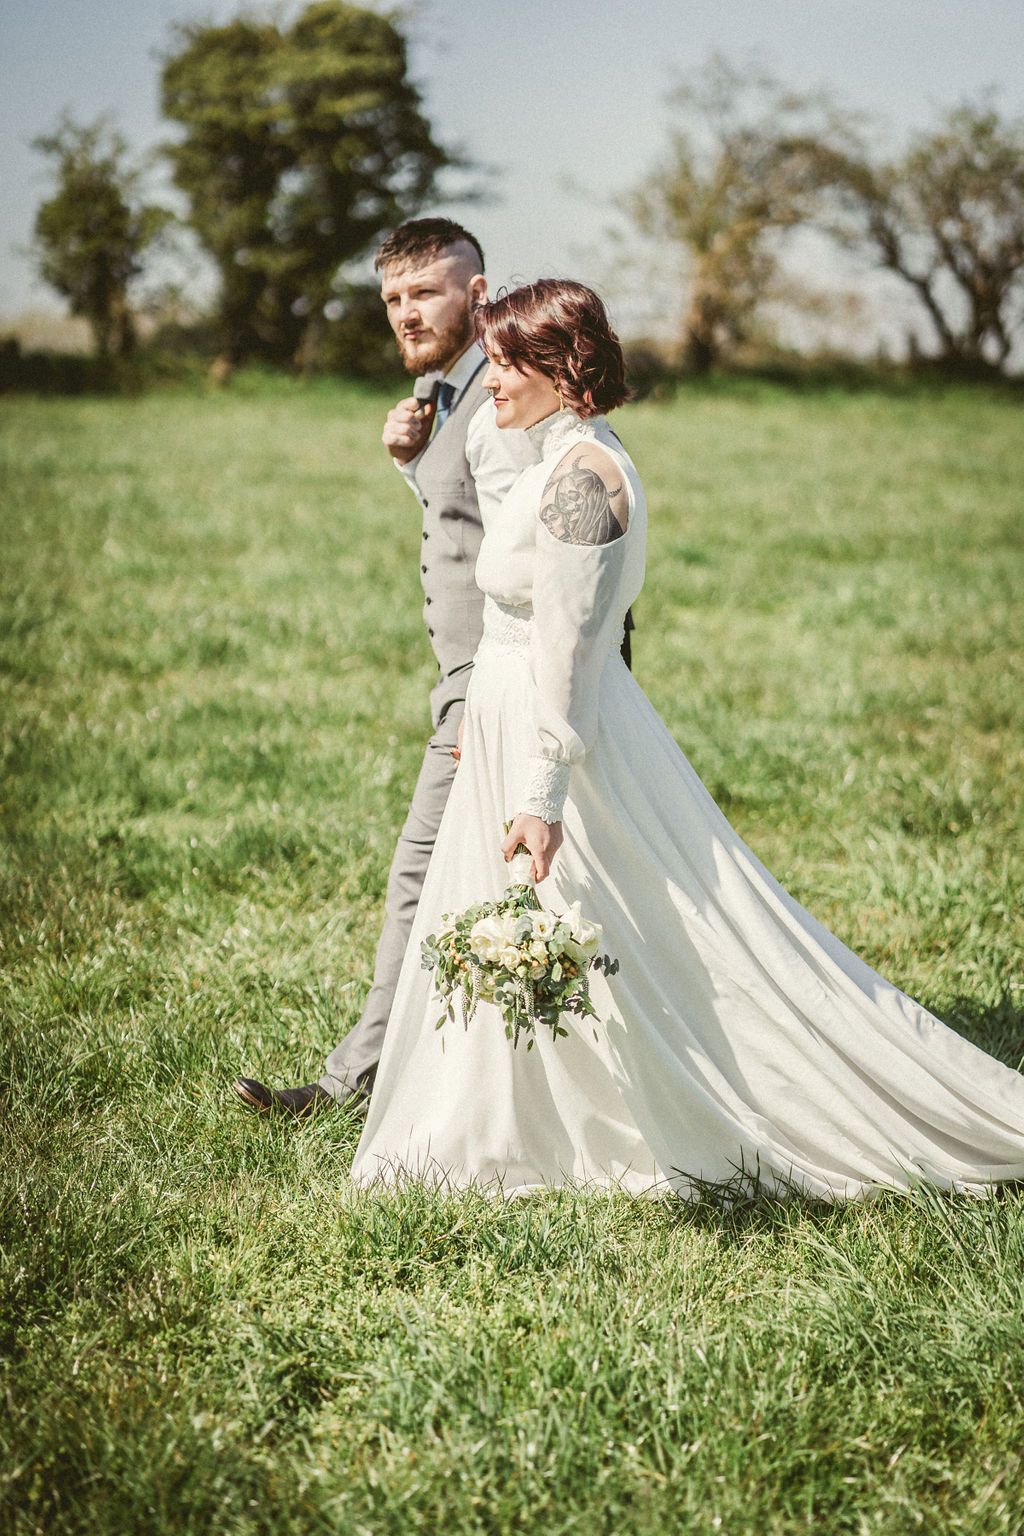 Elopement wedding dress ivory chiffon and lace